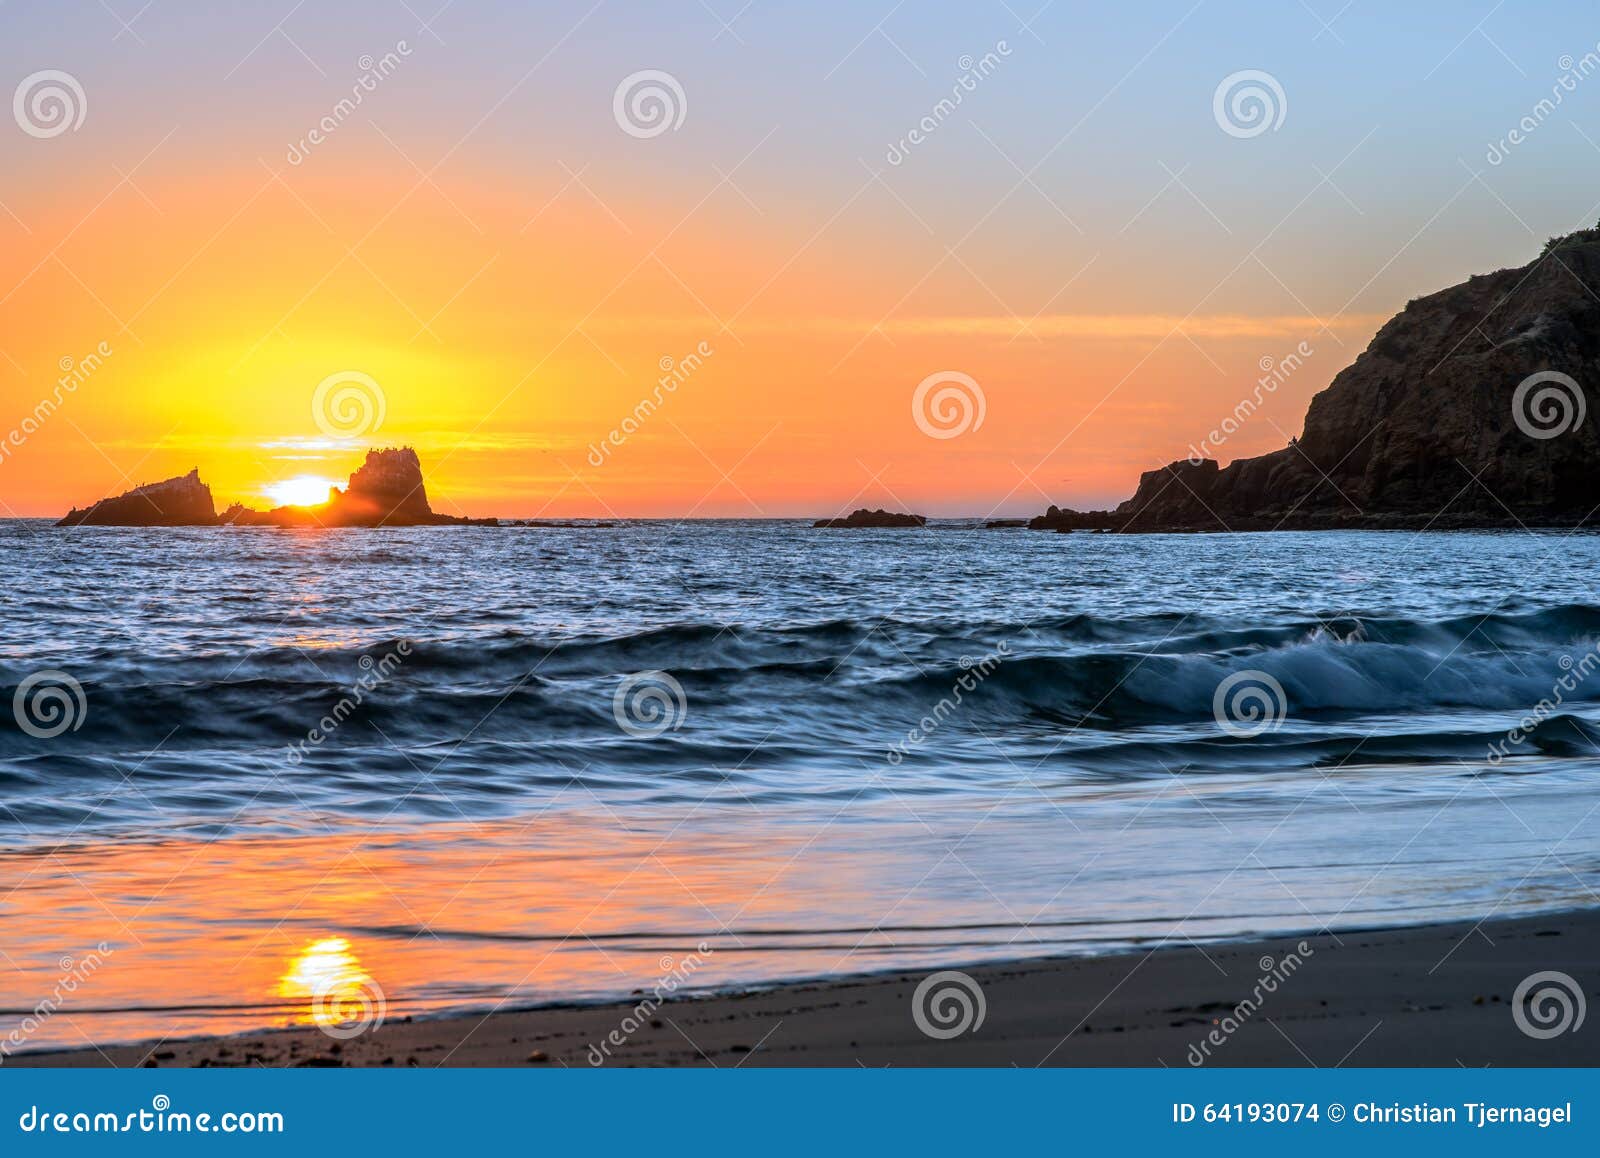 crescent bay sunset, laguna beach